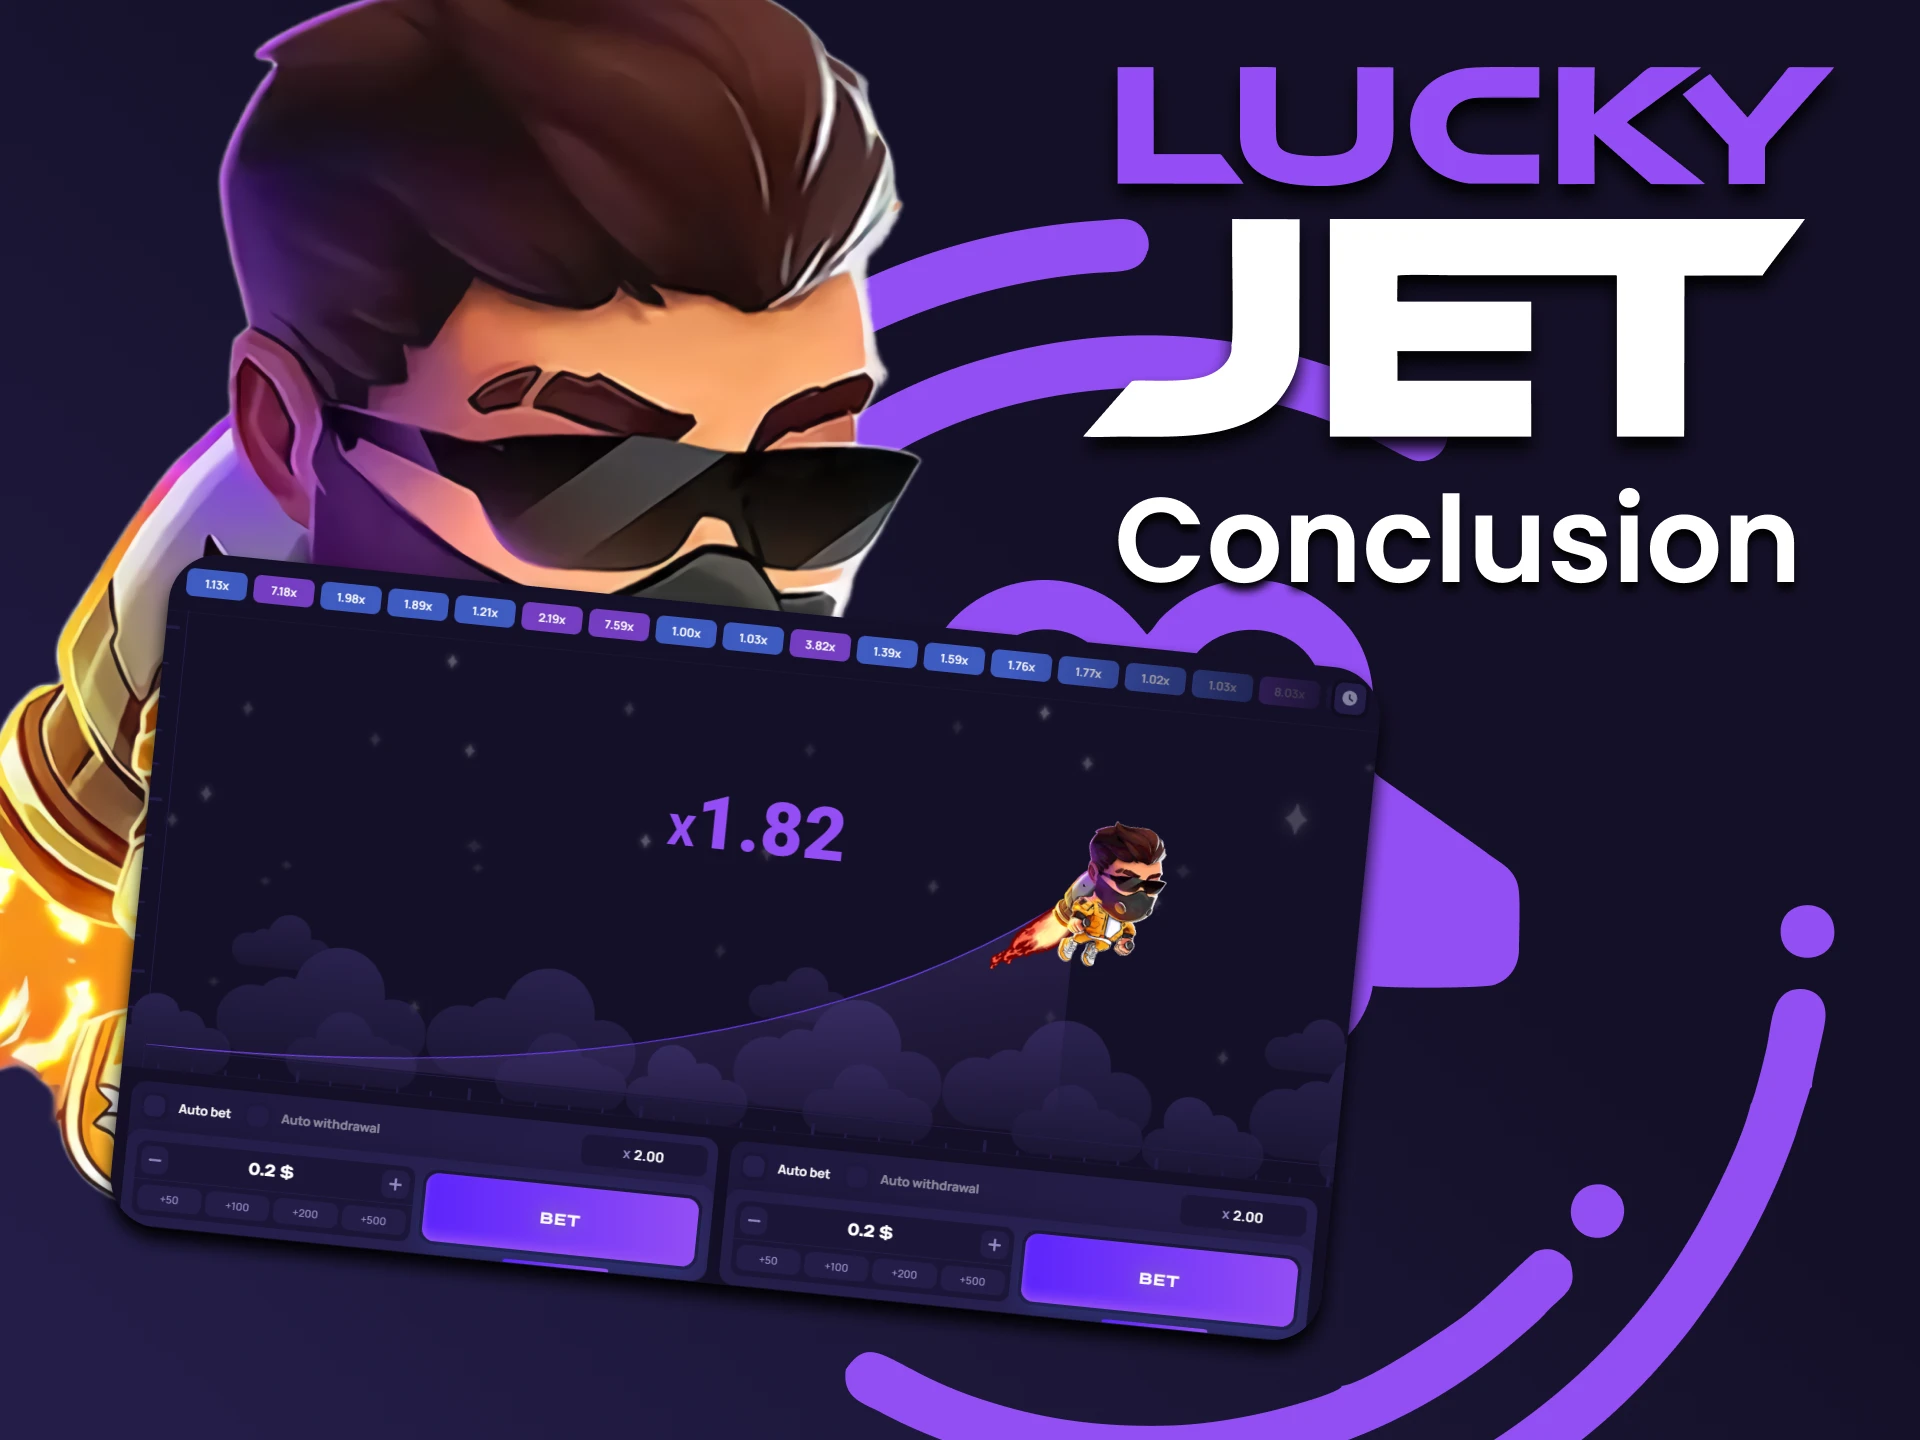 Prueba tu suerte en el juego de azar Lucky Jet.